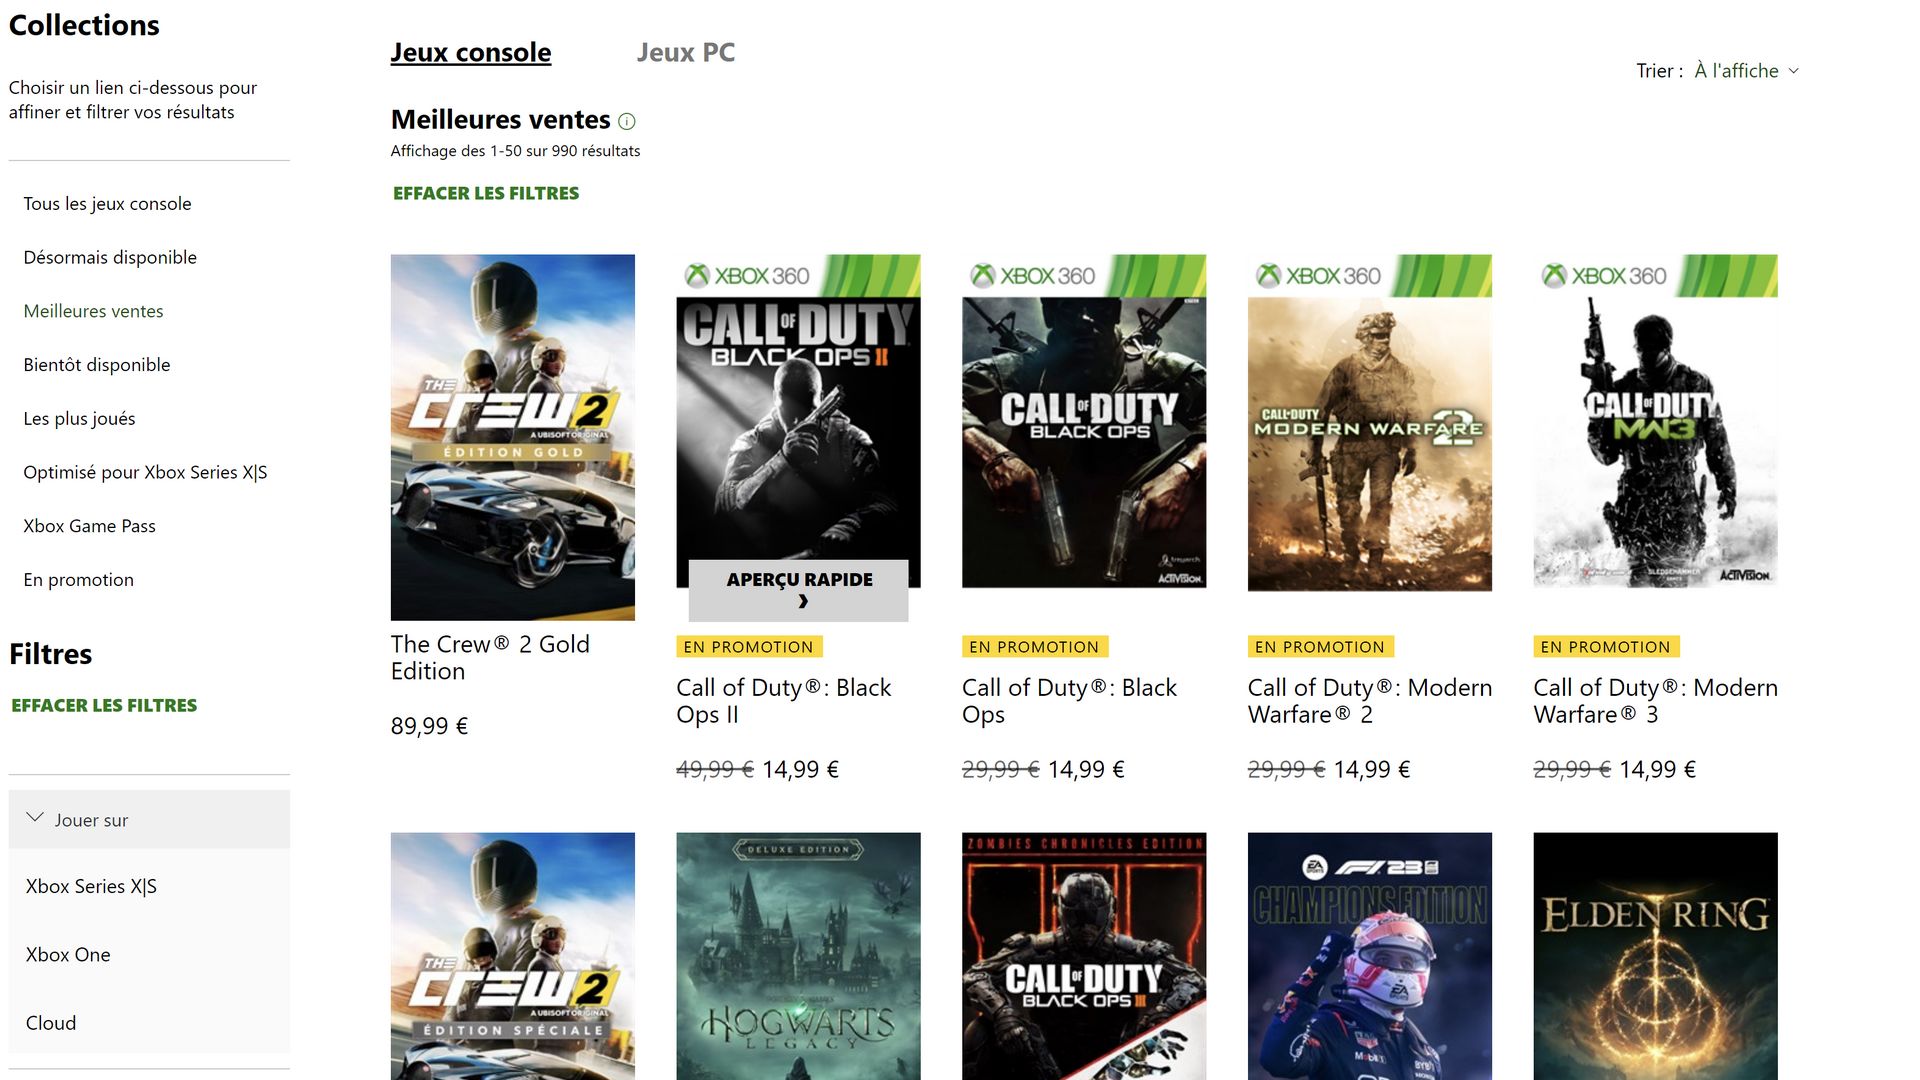 Stare najlepiej sprzedające się gry Call of Duty po remoncie Microsoftu!  |  Xbox One